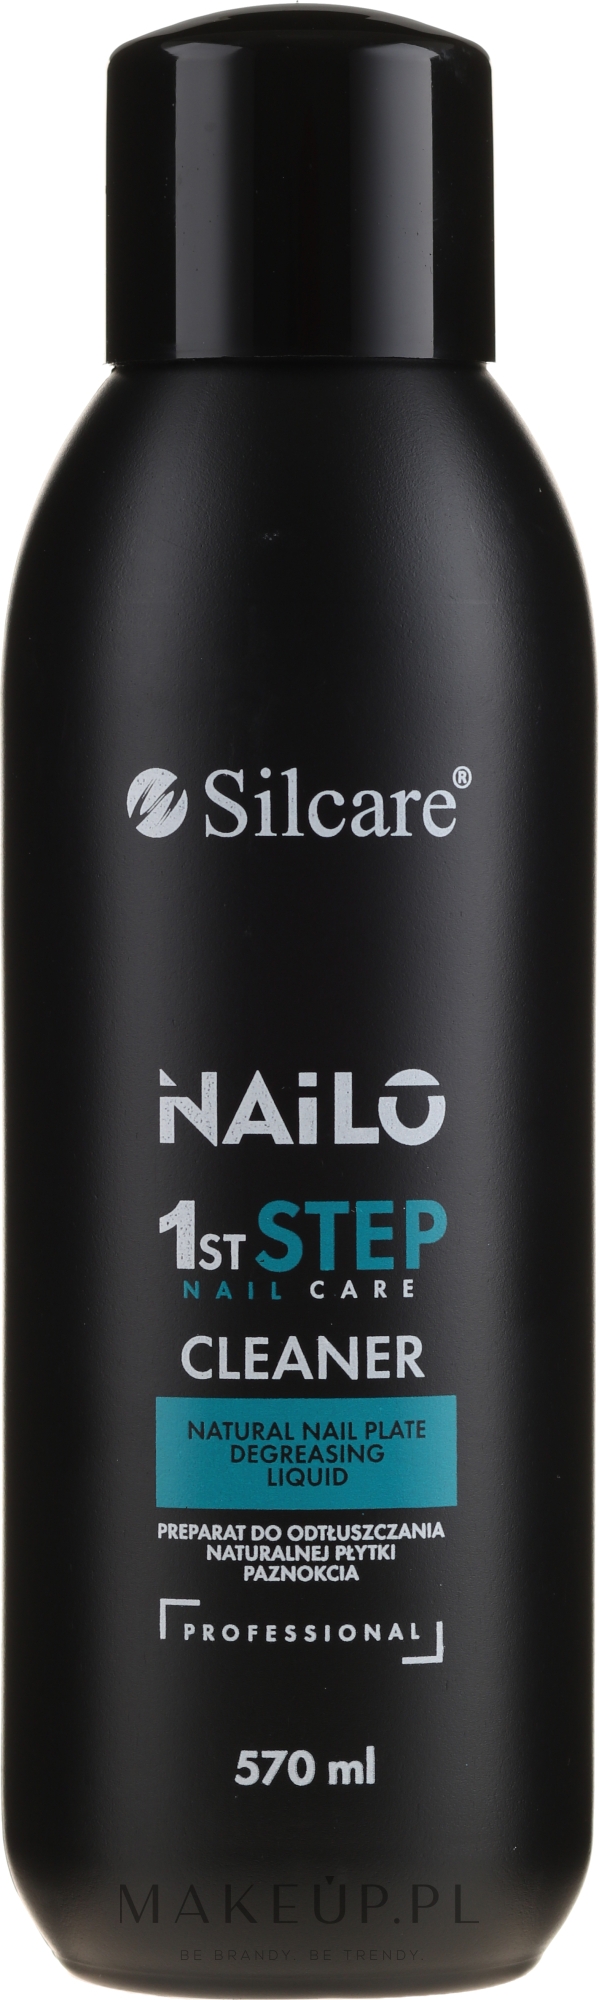 Profesjonalny płyn do odtłuszczania naturalnej płytki paznokcia - Silcare Nailo 1st Step Nail Cleaner — Zdjęcie 570 ml